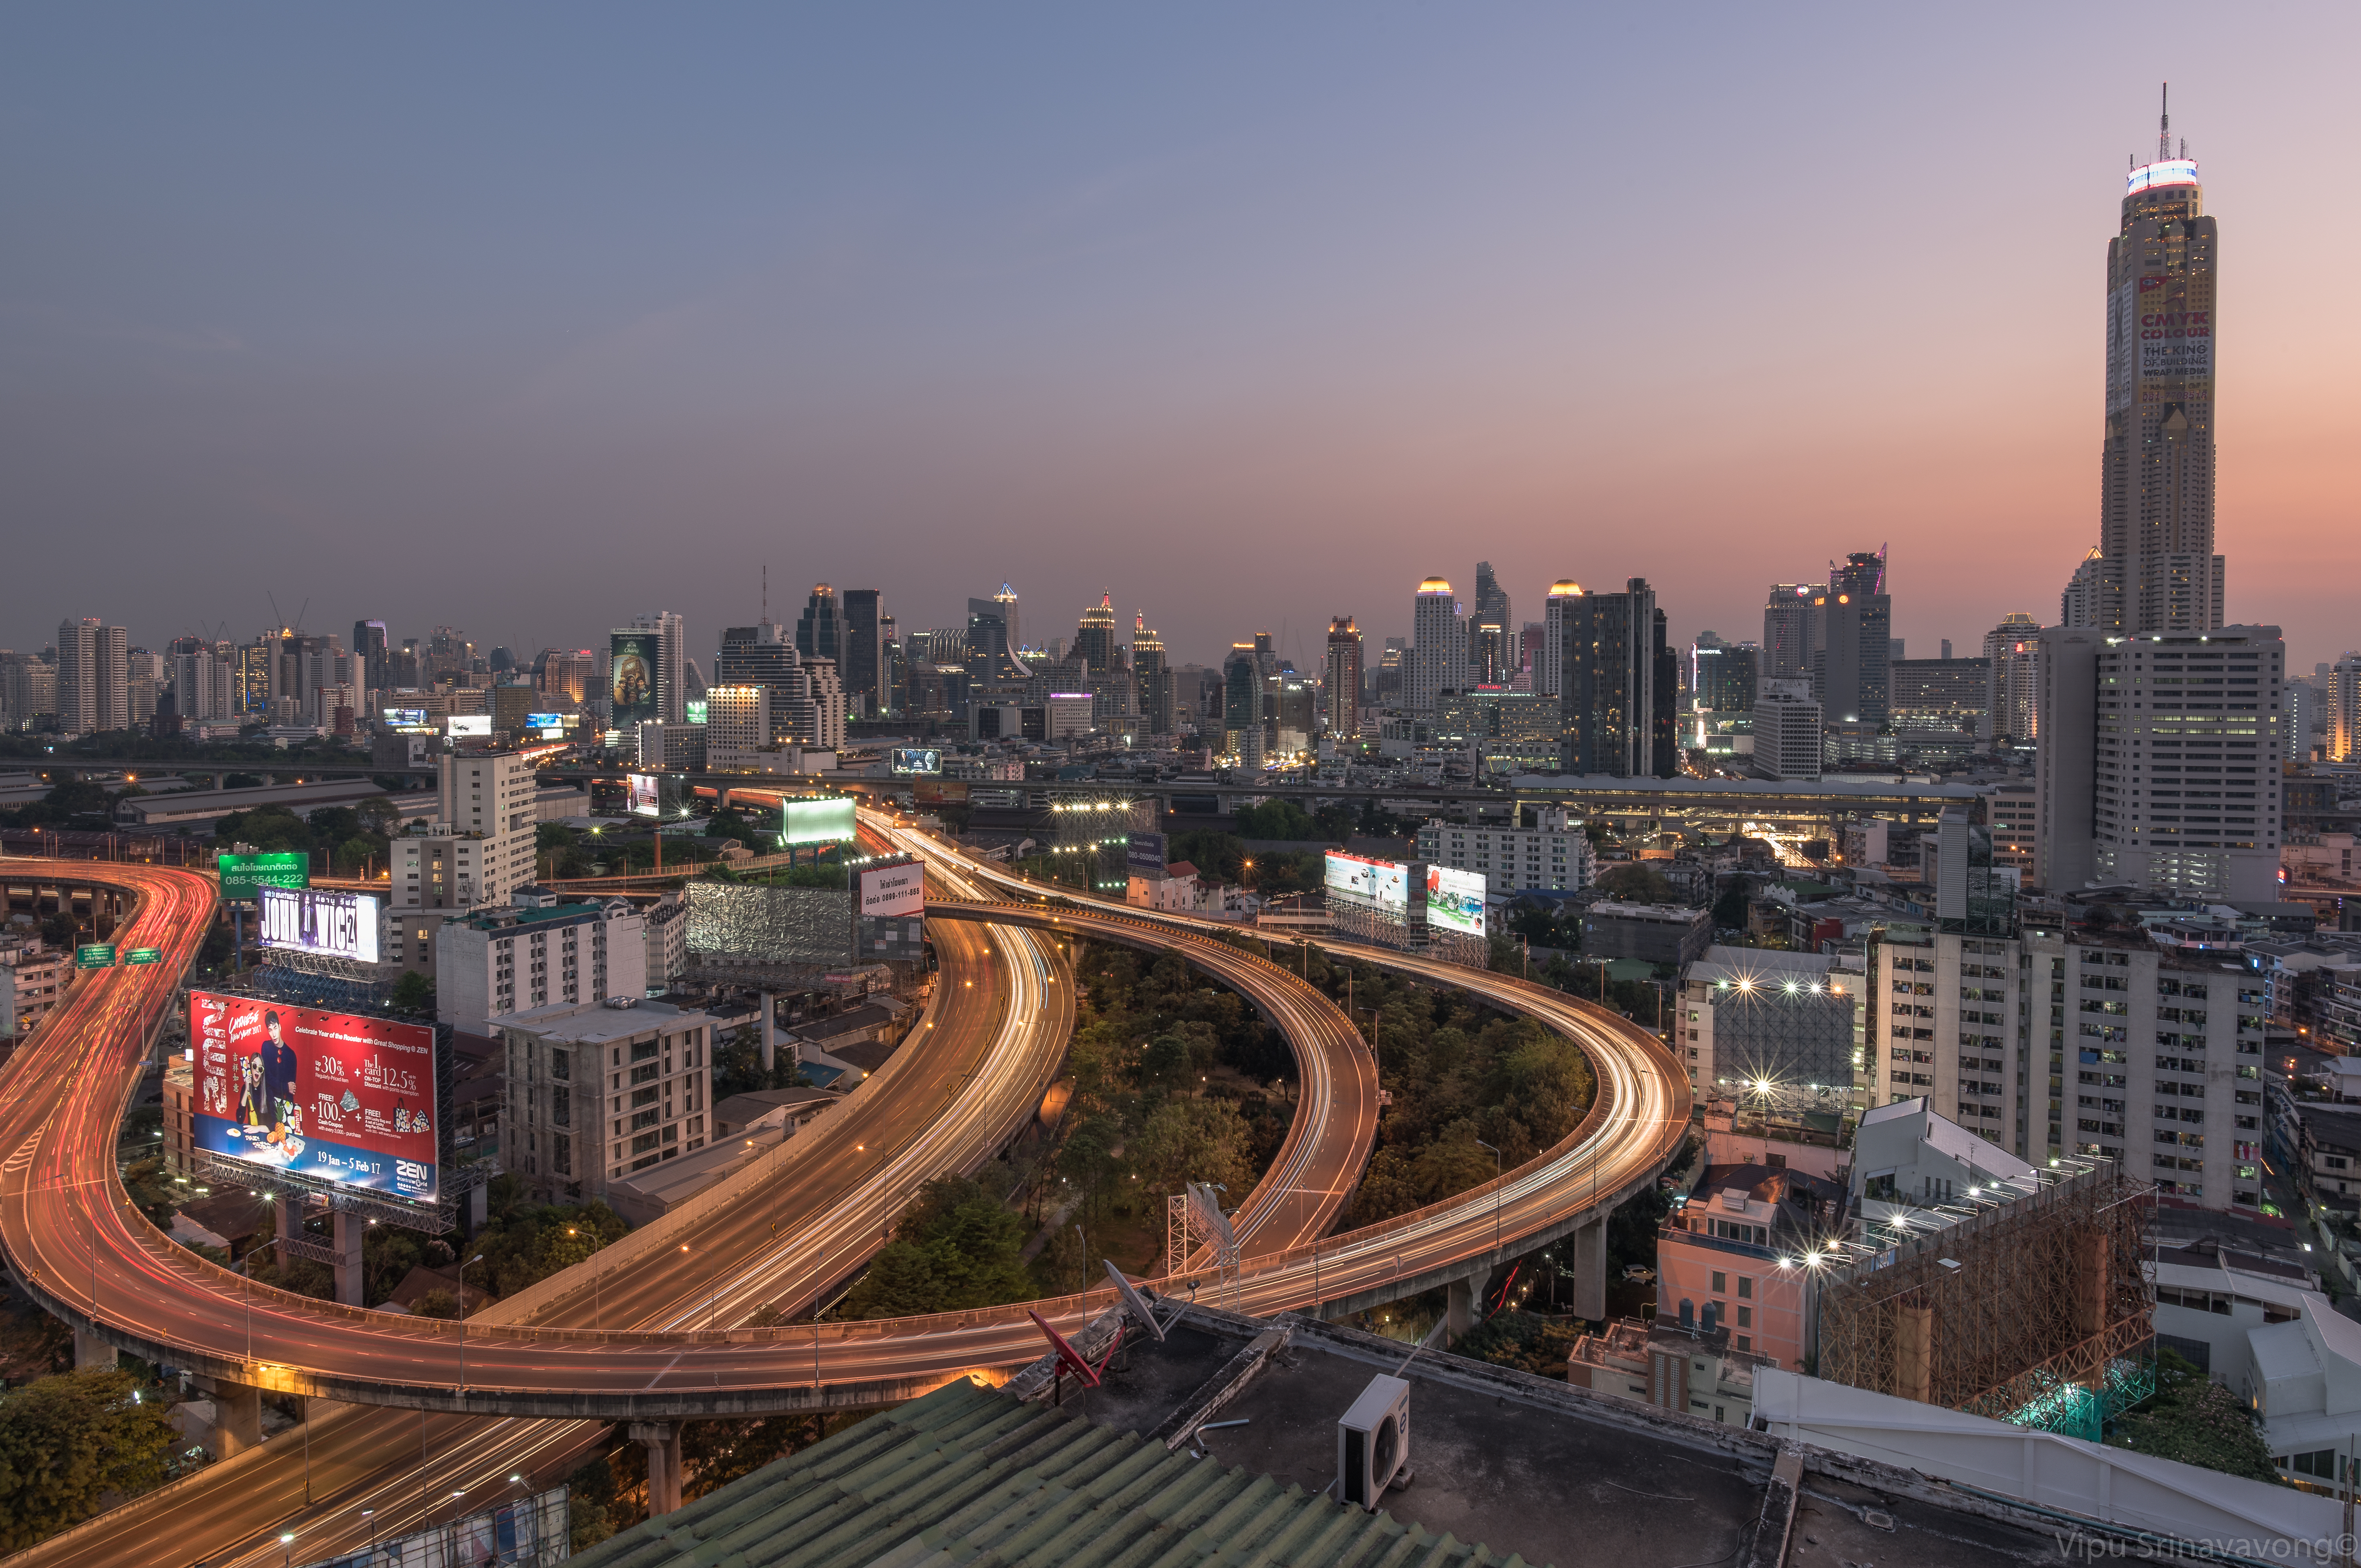 Bangkok, Thailand (photo credit: Vipu TaE/flickr)